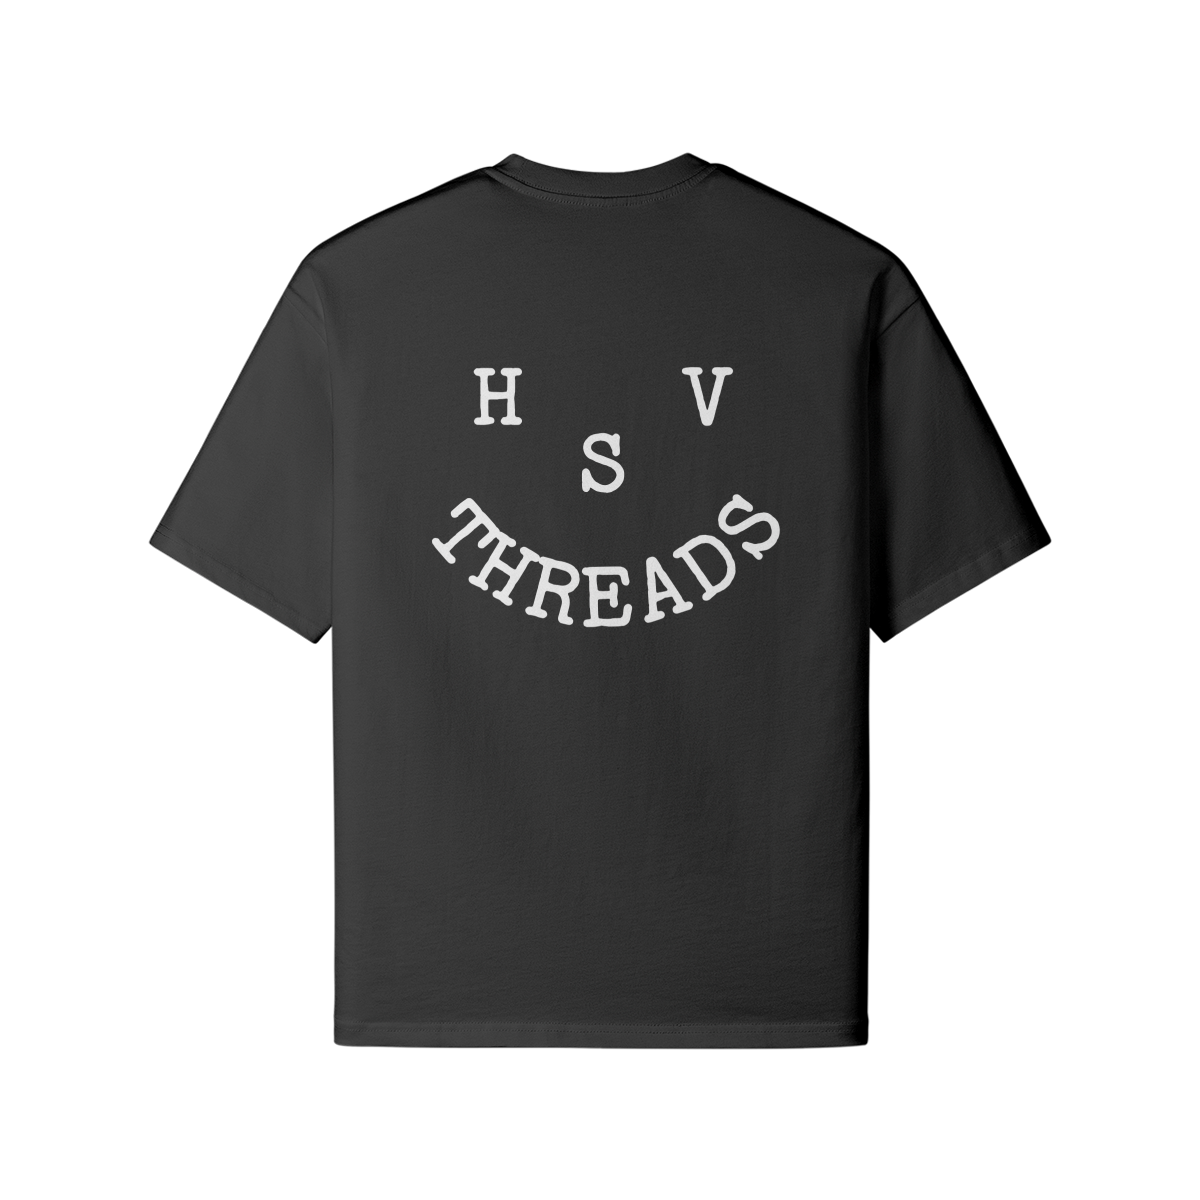 HSV Threads :)